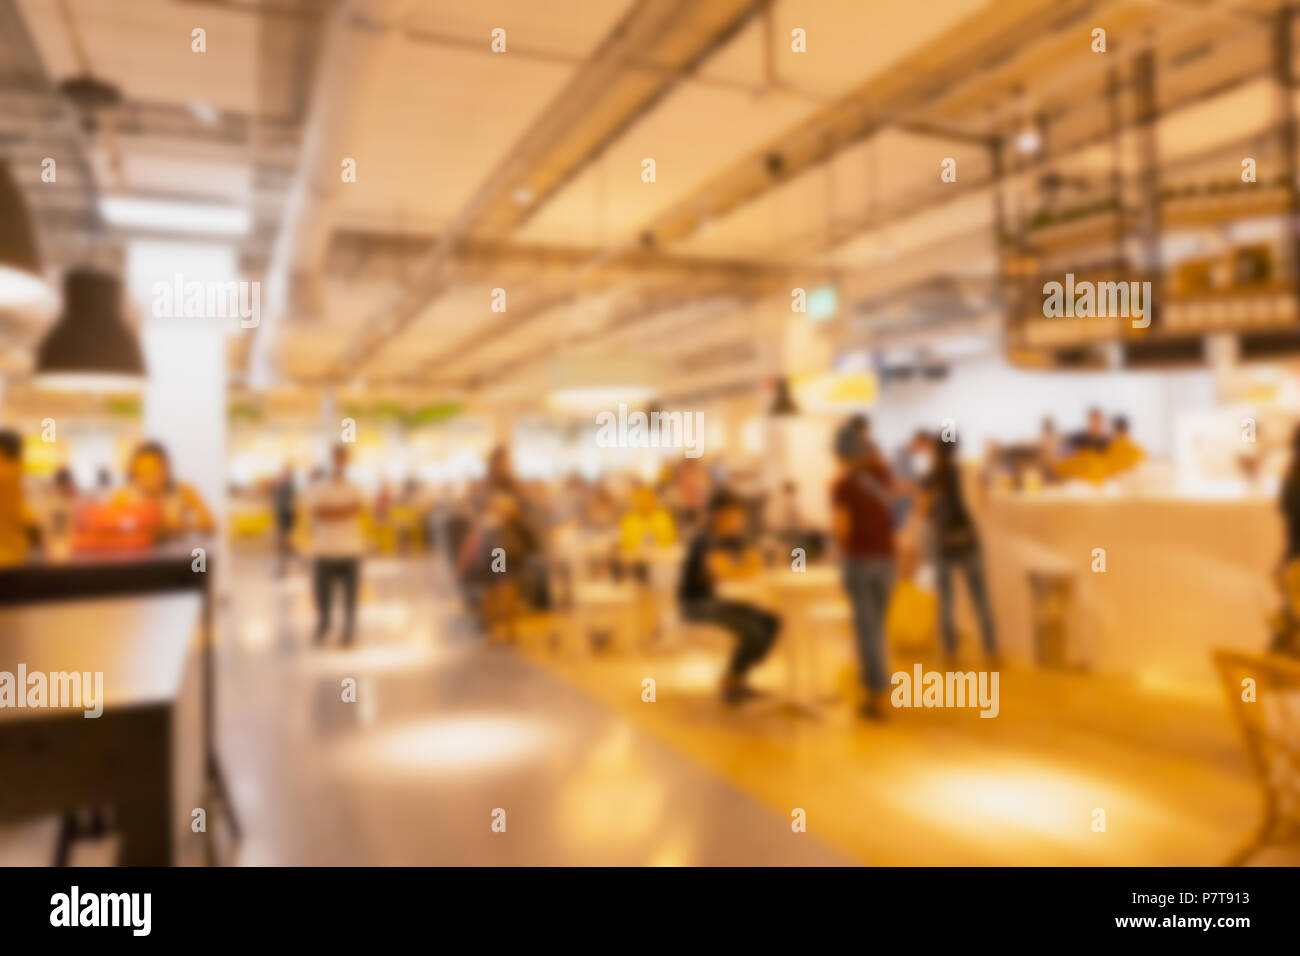 Blur Kantine für Gericht Esszimmer Halle in modernen Supermarkt einkaufen Lifestyle Stockfoto